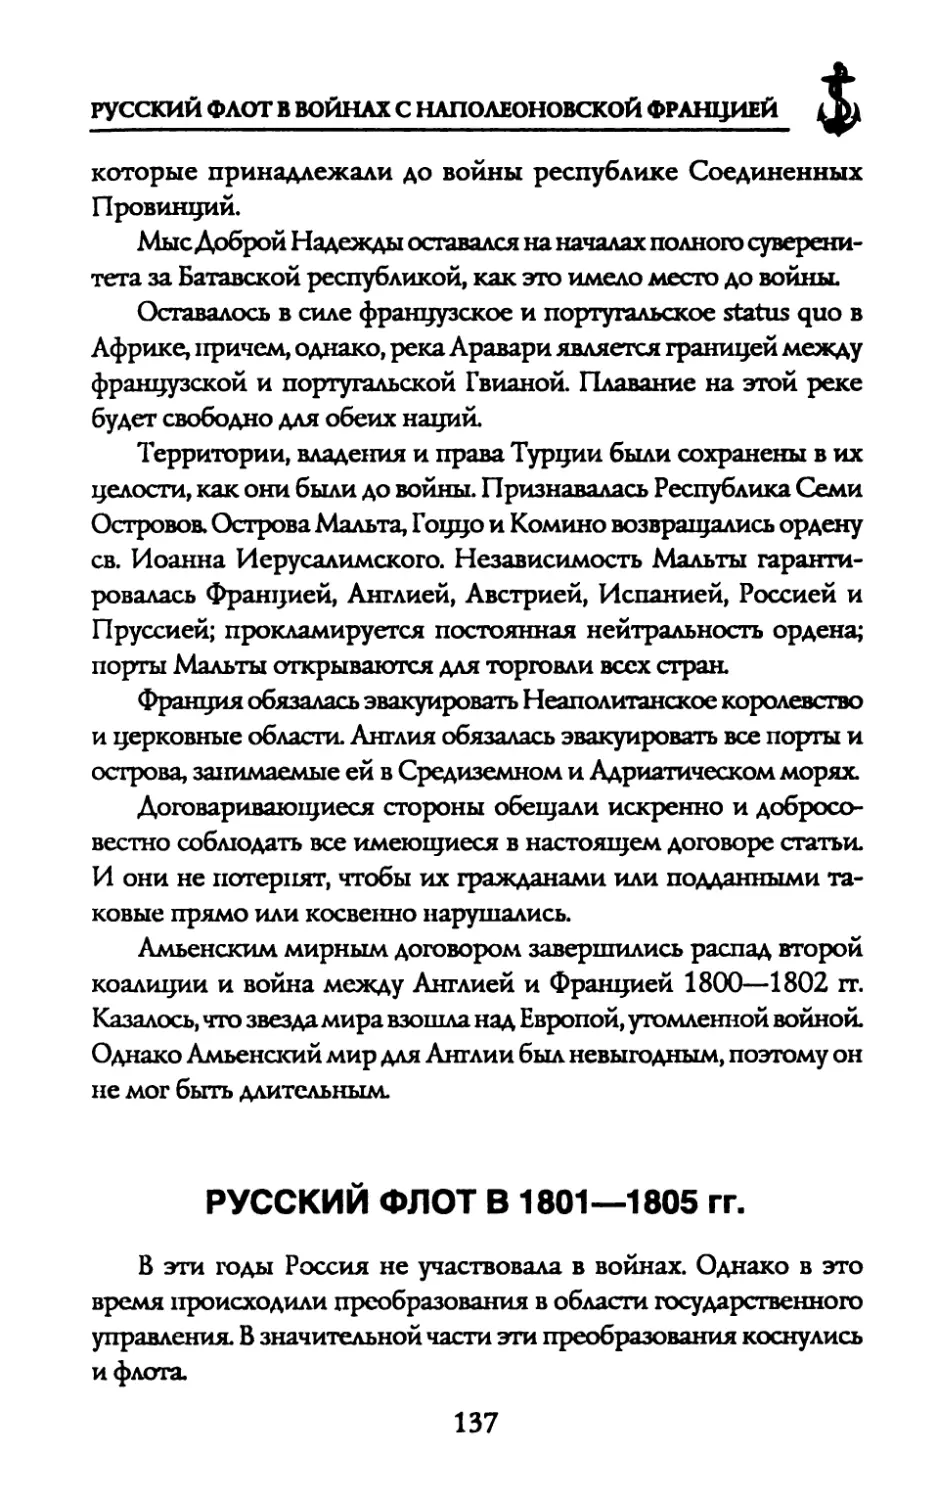 РУССКИЙ ФЛОТ В 1801—1805 гг.